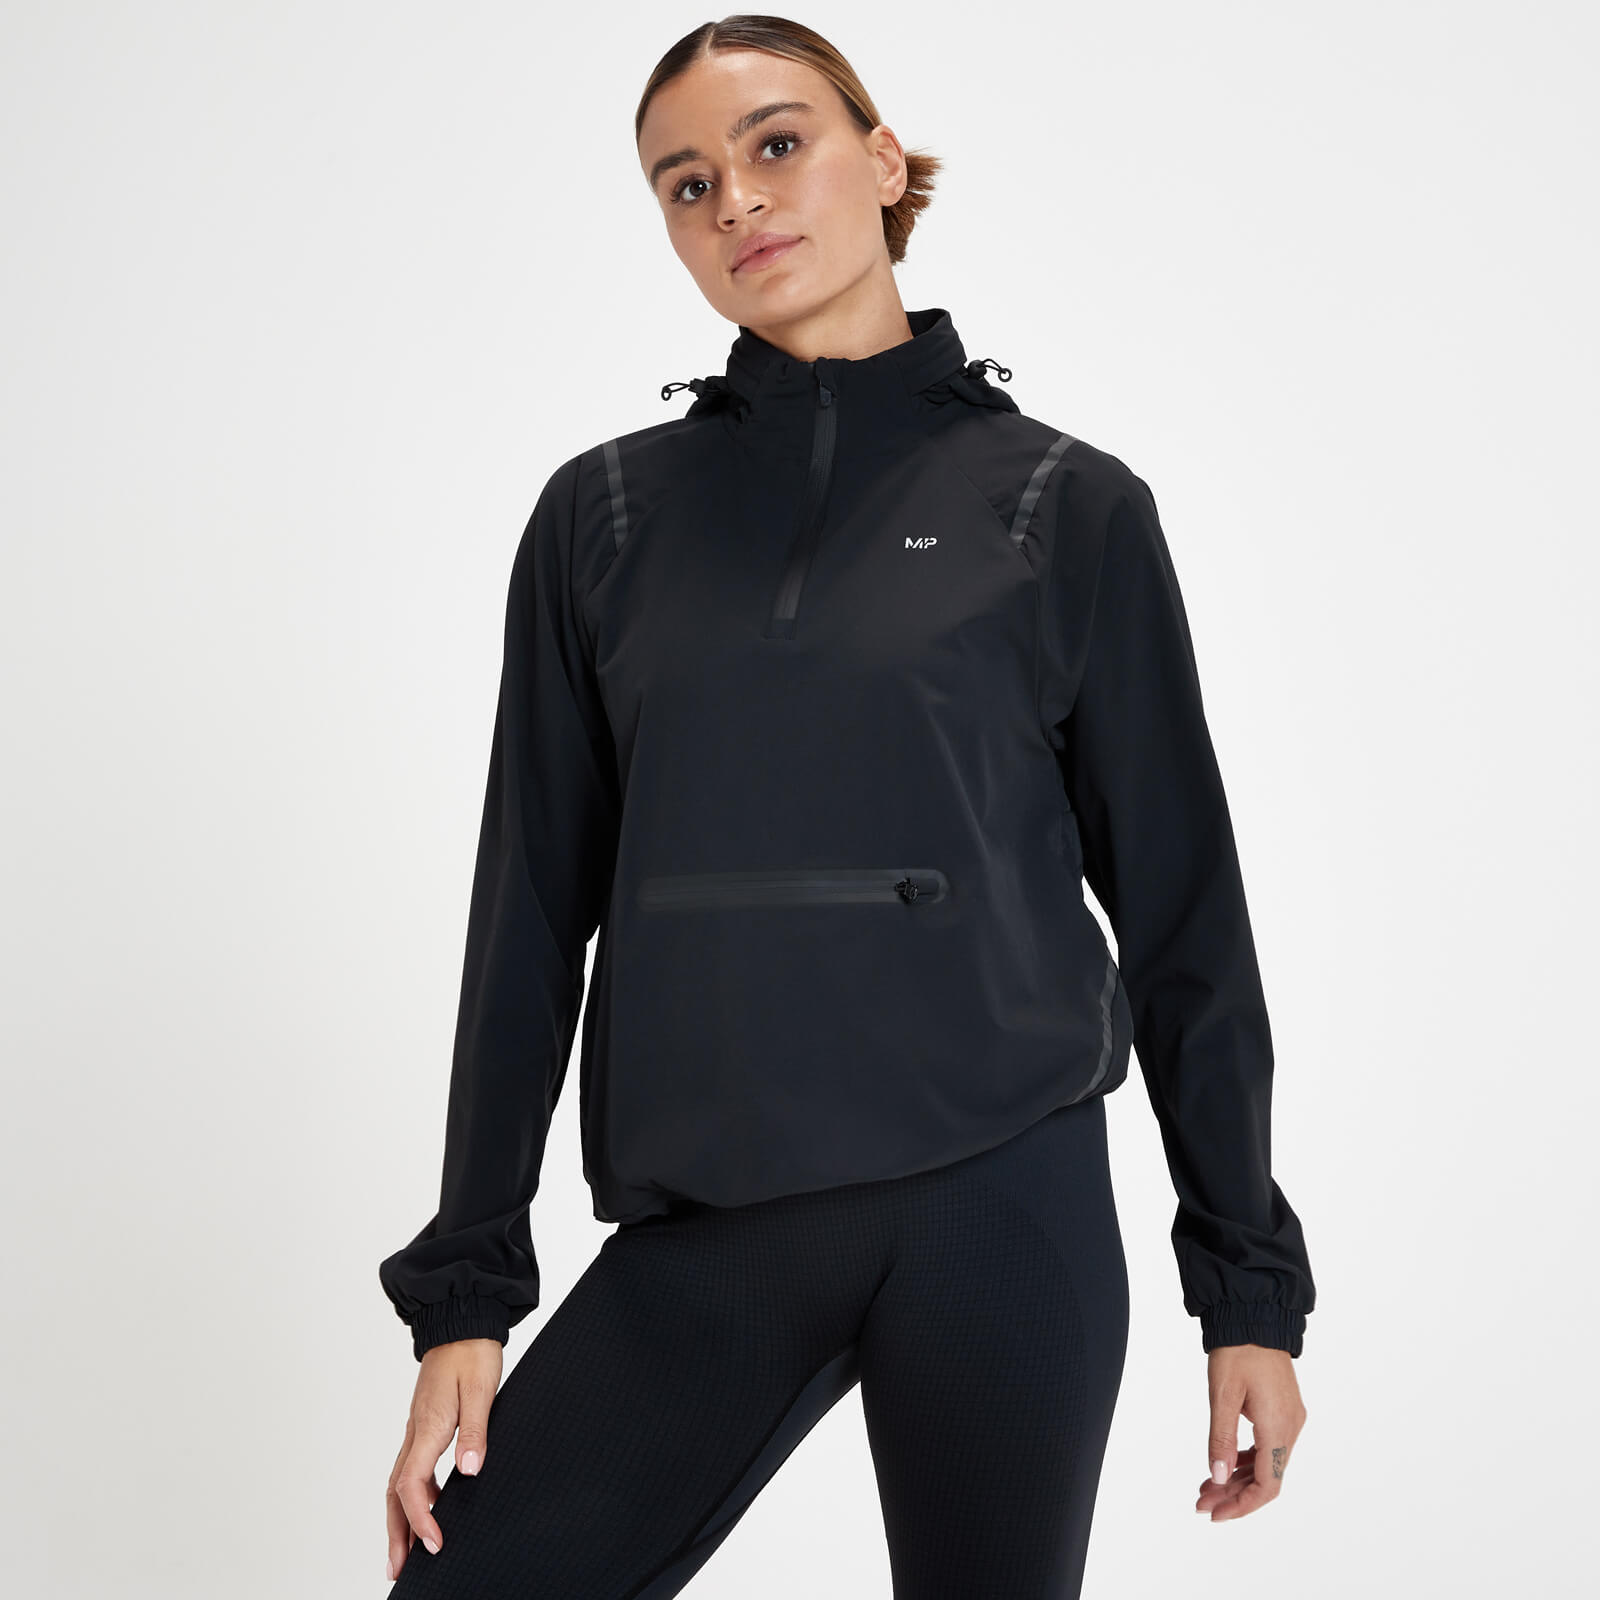 Áo Khoác Chạy bộ Bỏ túi Ultra Velocity dành cho Nữ giới của MP - Màu đen